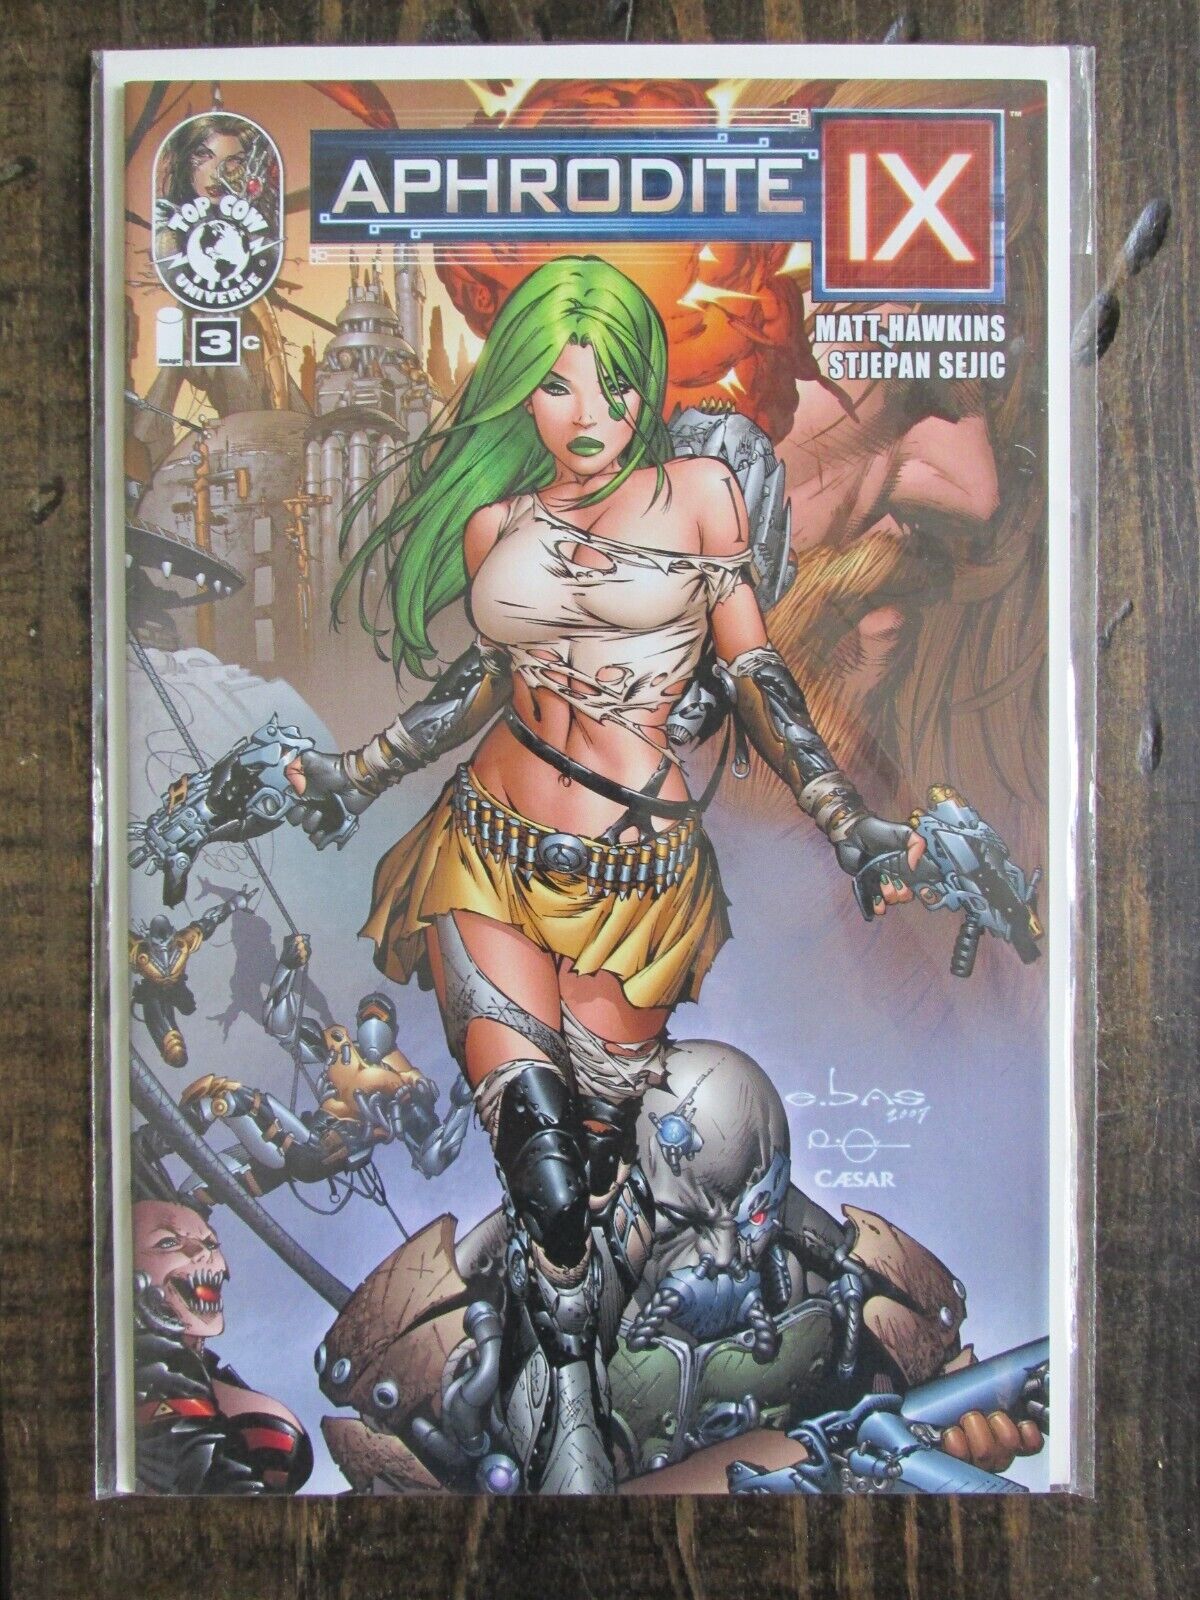 Image 2013 APHRODITE IX Comic Book Issue # 3 Basaldua Variant Cover C Version 3C